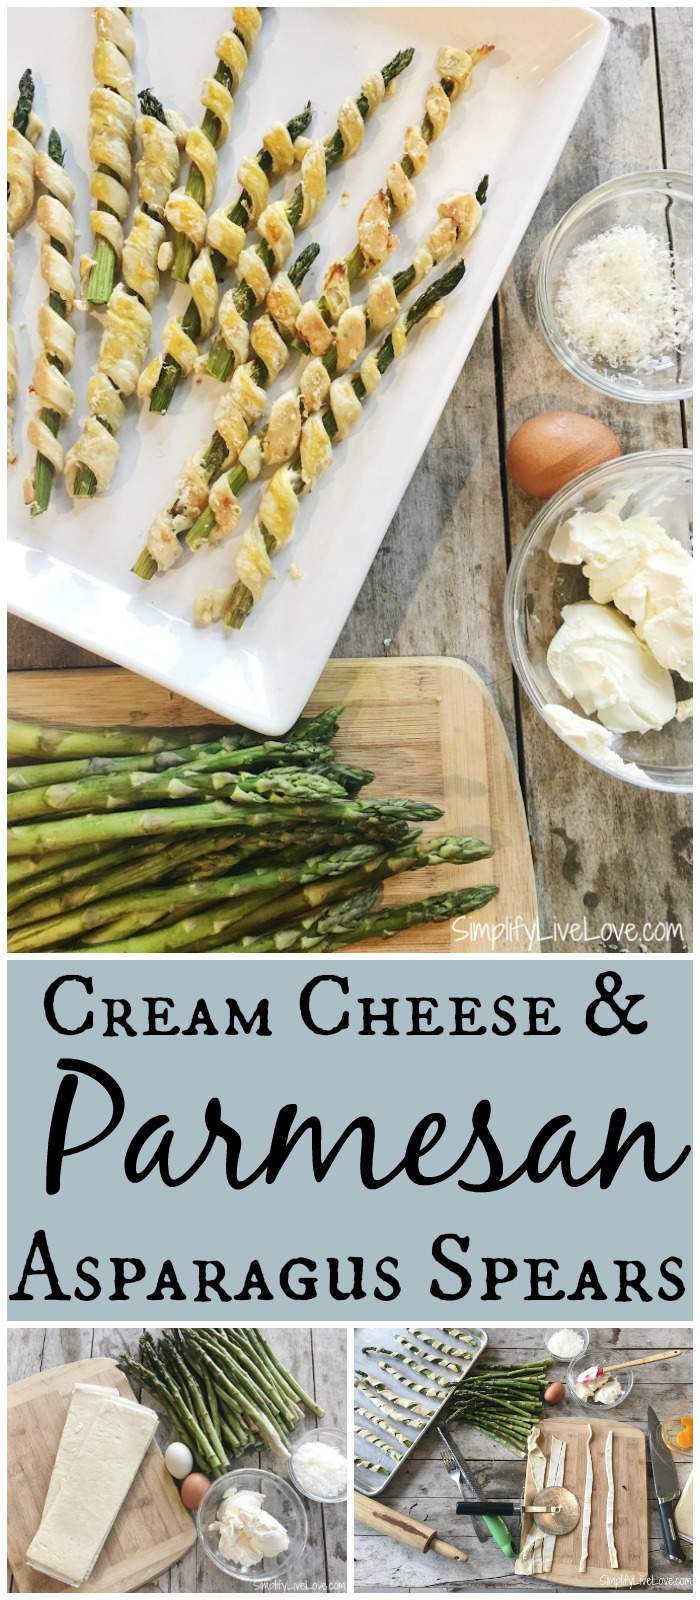 Cream Cheese & Parmesan Asparagus Spears